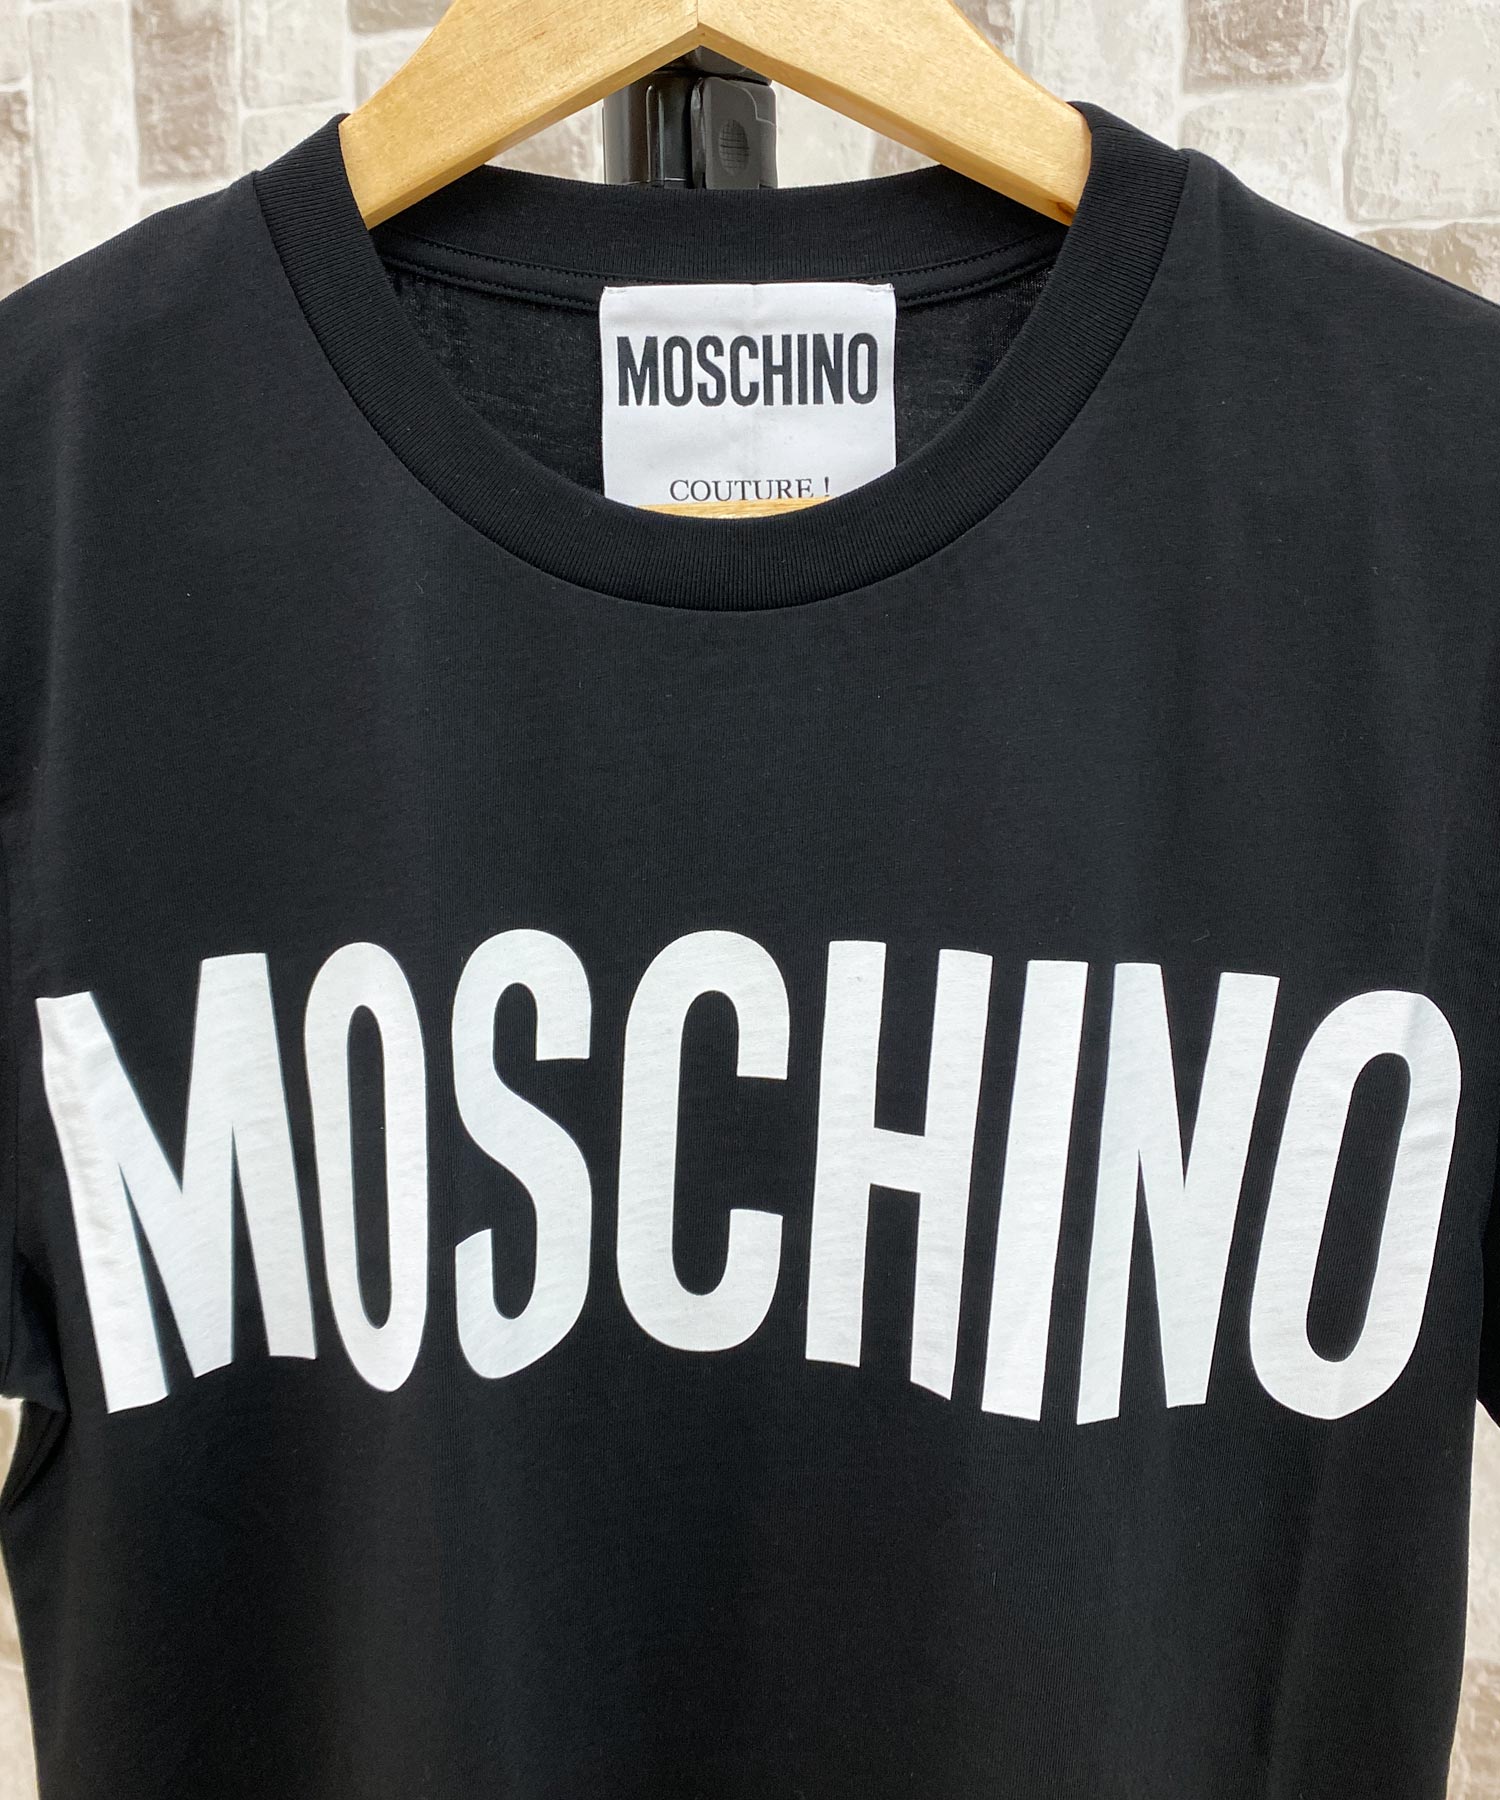 Franco Moschino フランコ・モスキーノ 半袖ロゴTシャツ COUTURE